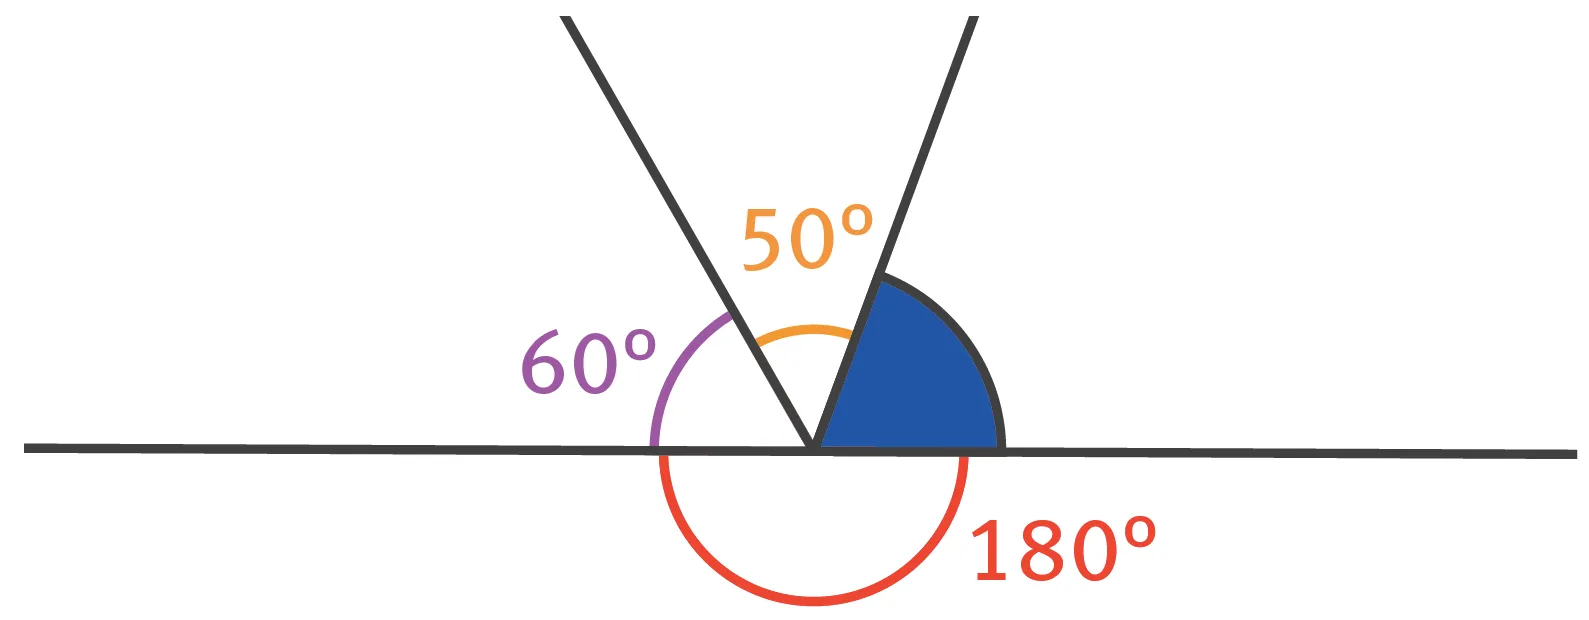 Sur une droite, un angle de 60°, suivi d'un angle de 50° et suivi d'un angle coloré en bleu: la somme des trois angles est égale à 180°.